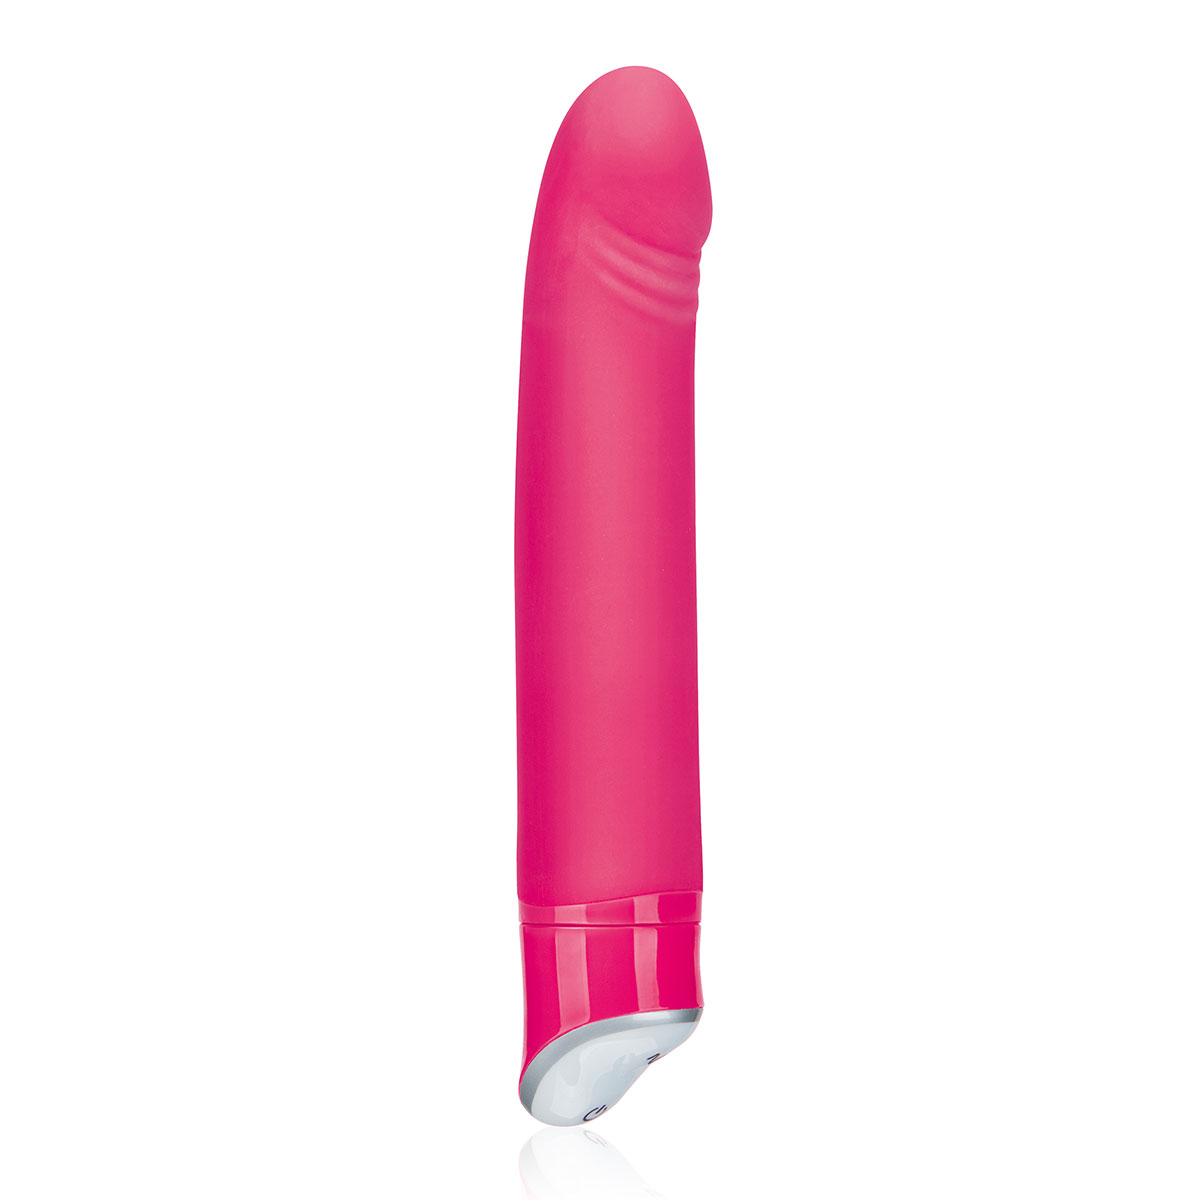 Erotic Fantasy - вибратор с реалистичной головкой, 17х3,5 см (розовый)